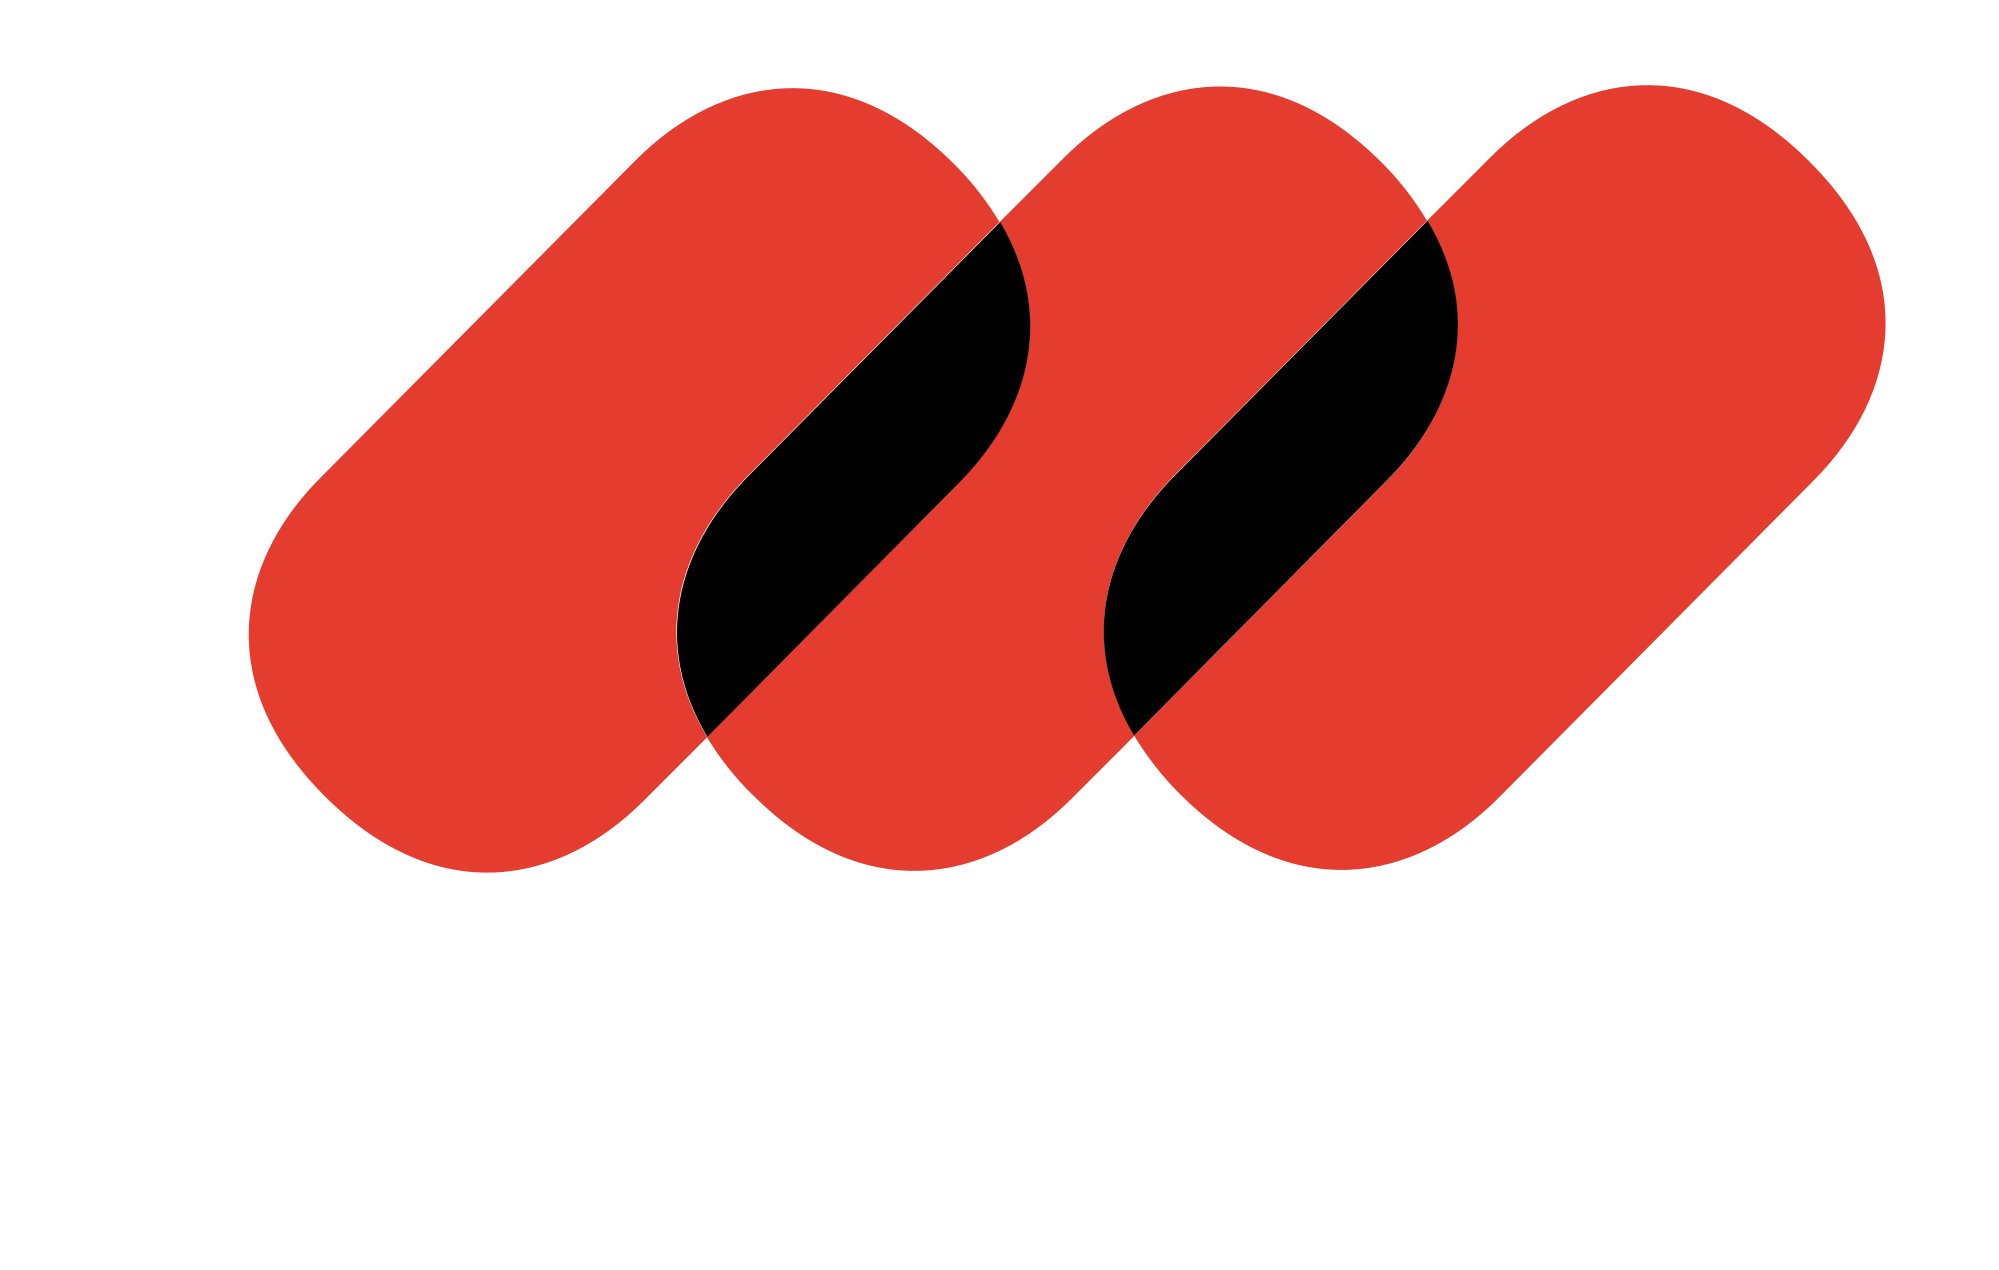 Mediapro Logo